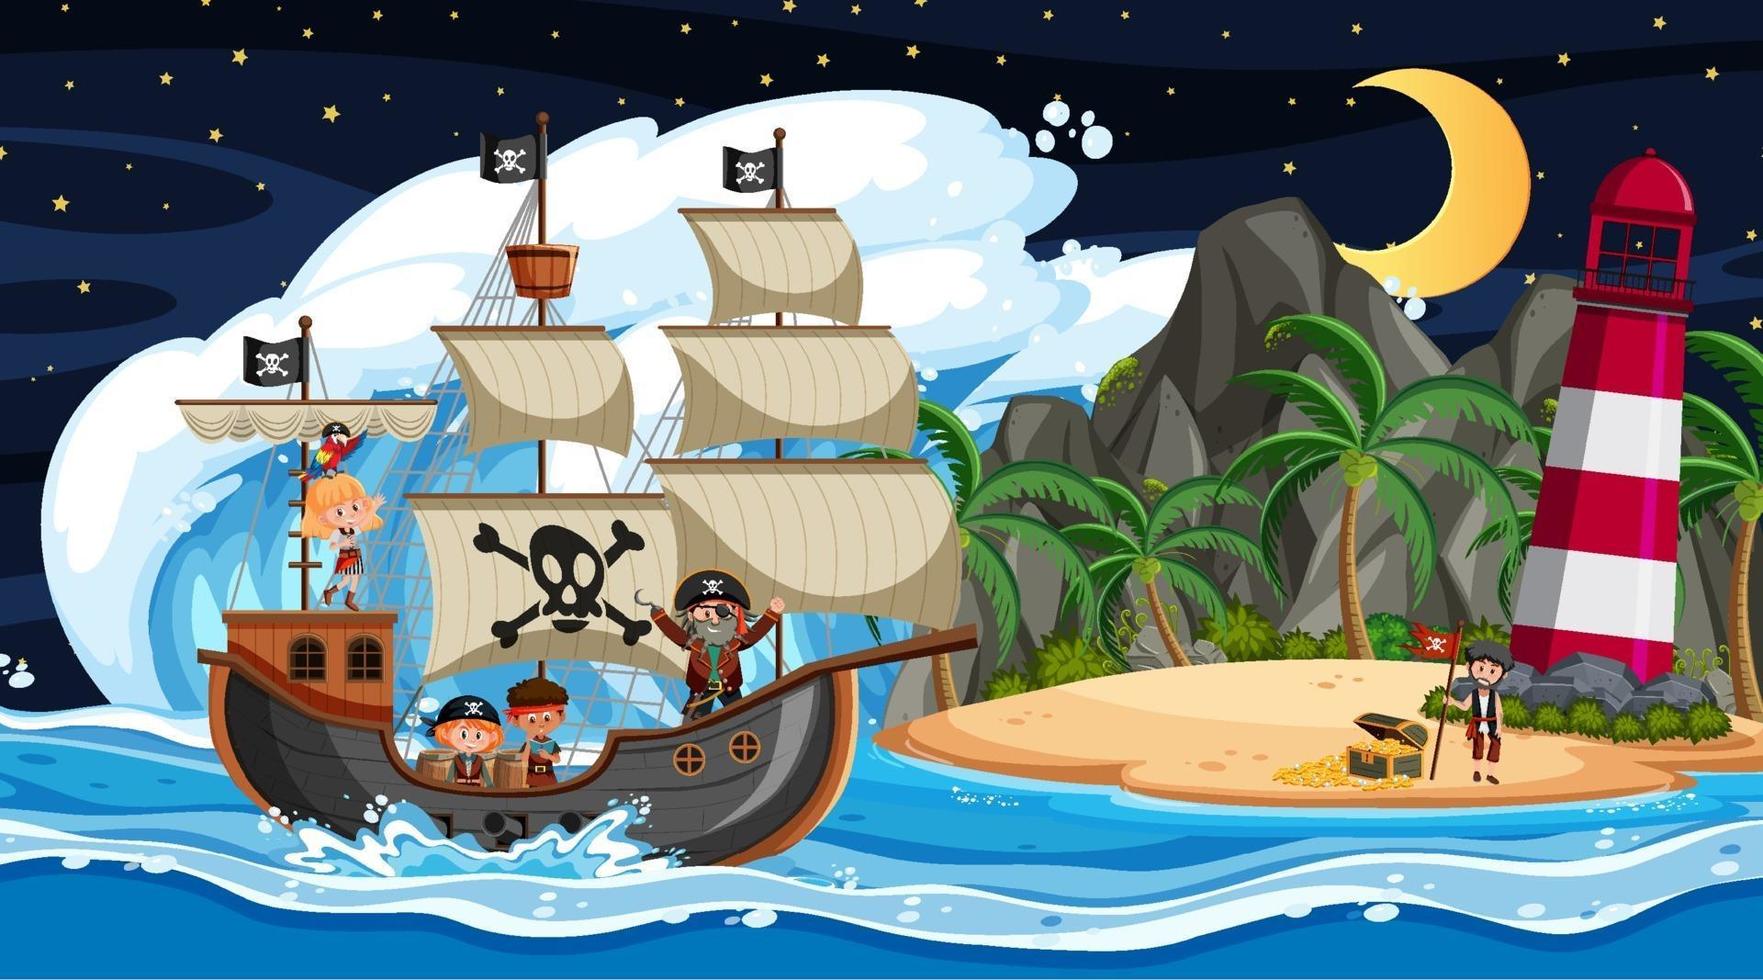 île avec bateau pirate à la scène de nuit en style cartoon vecteur